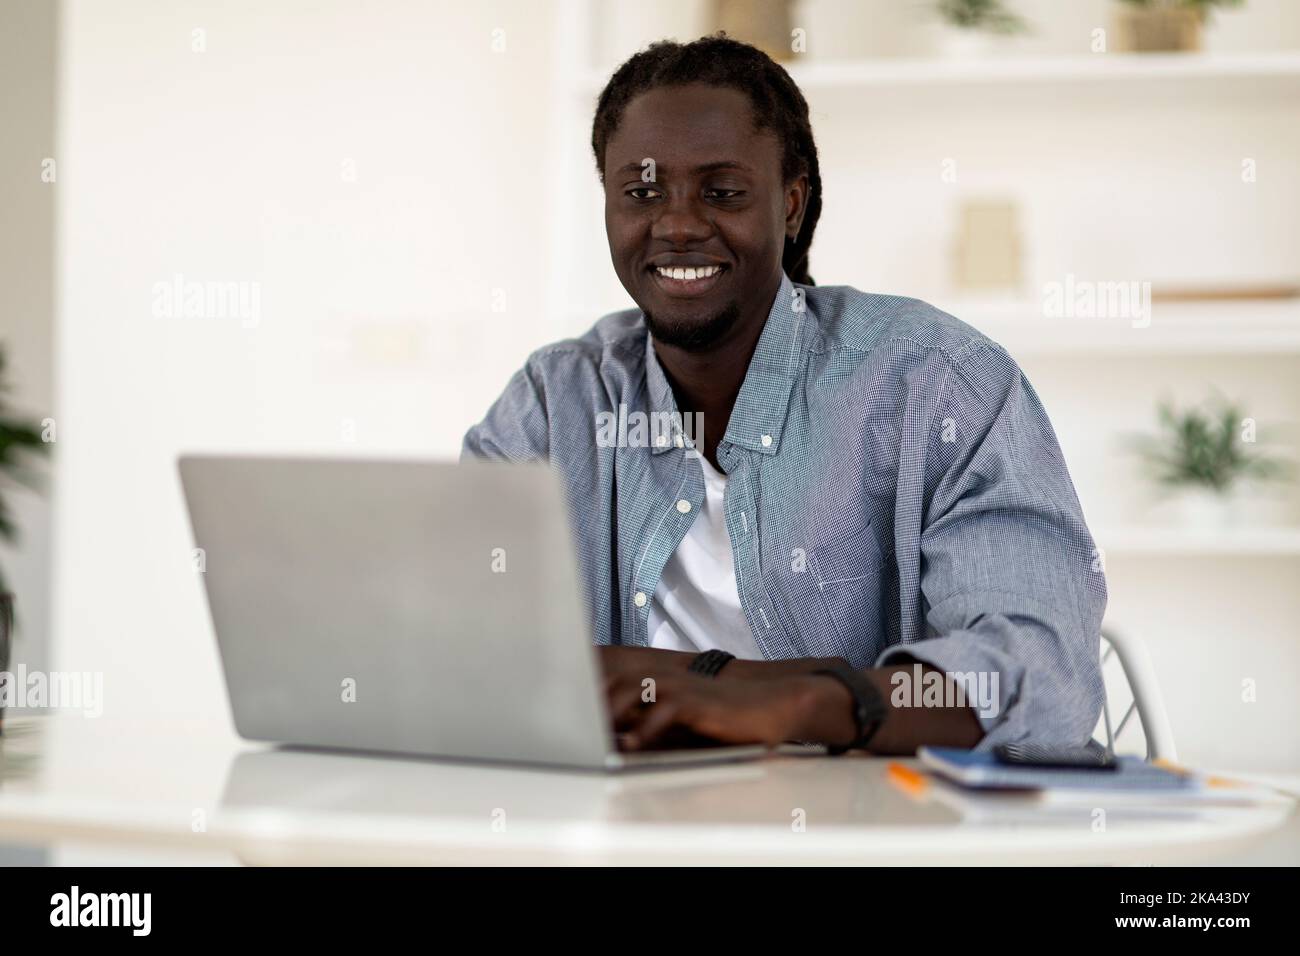 Carrière freelance. Portrait d'un jeune homme noir souriant travaillant avec un ordinateur portable Banque D'Images